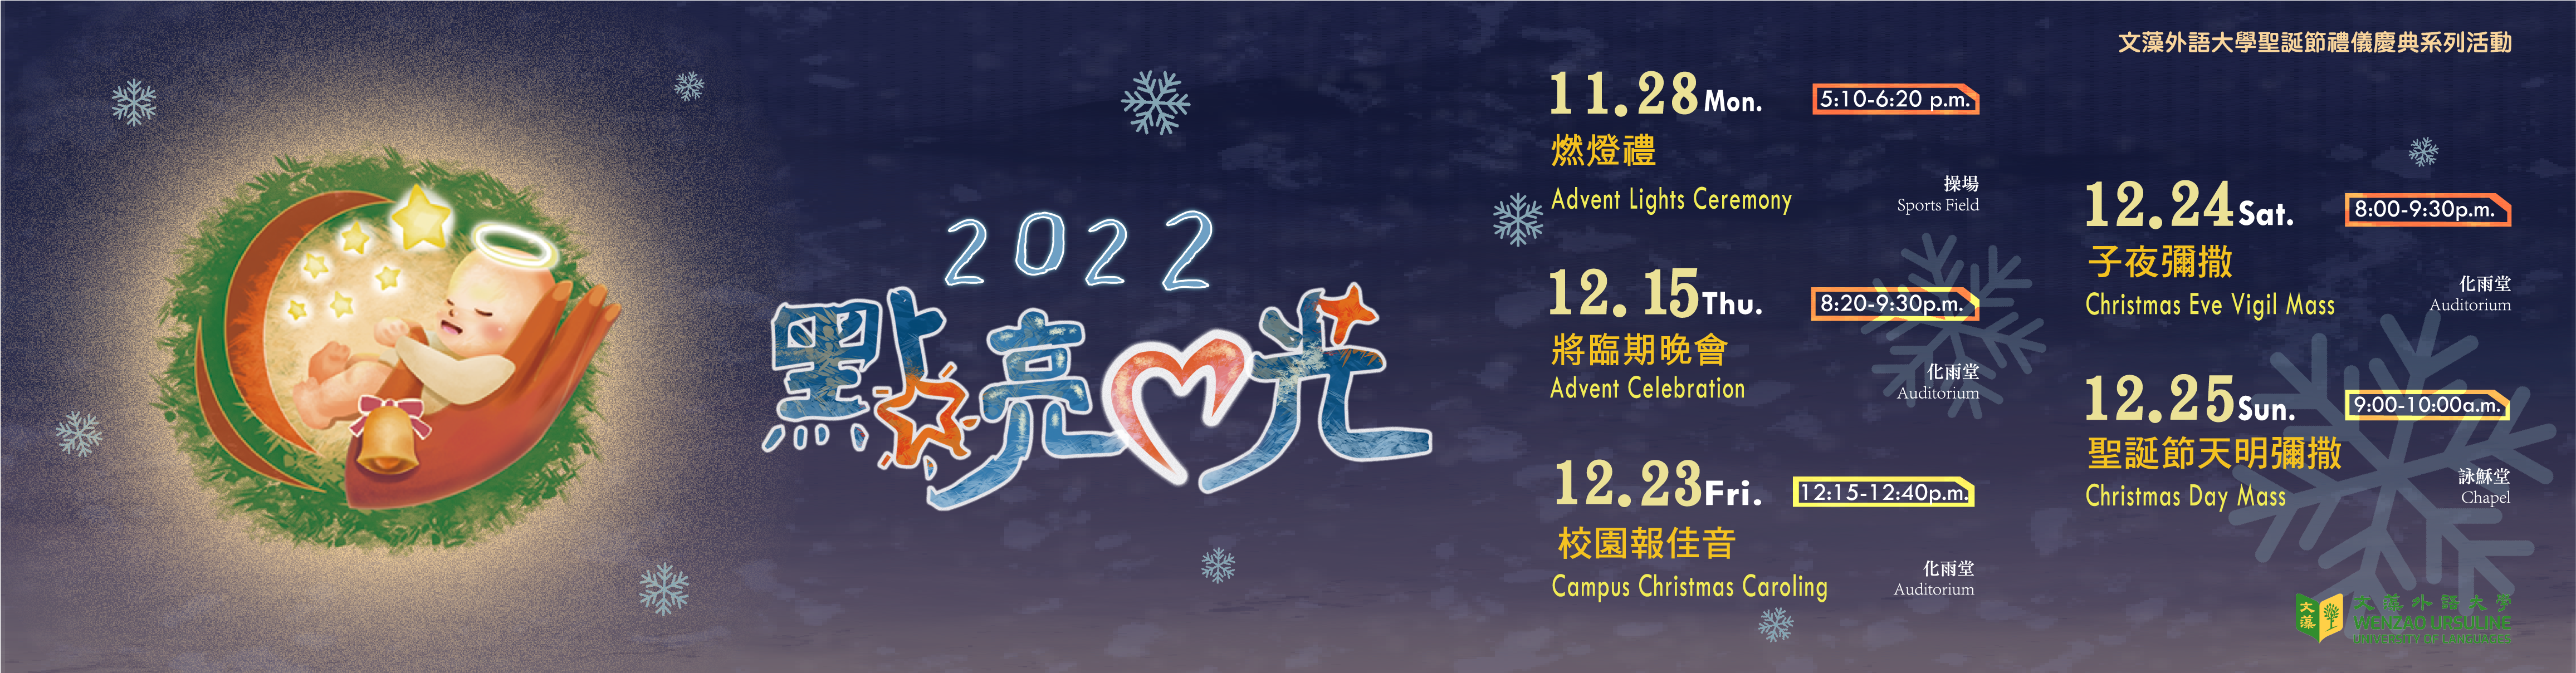 2022聖誕節系列活動(另開新視窗)